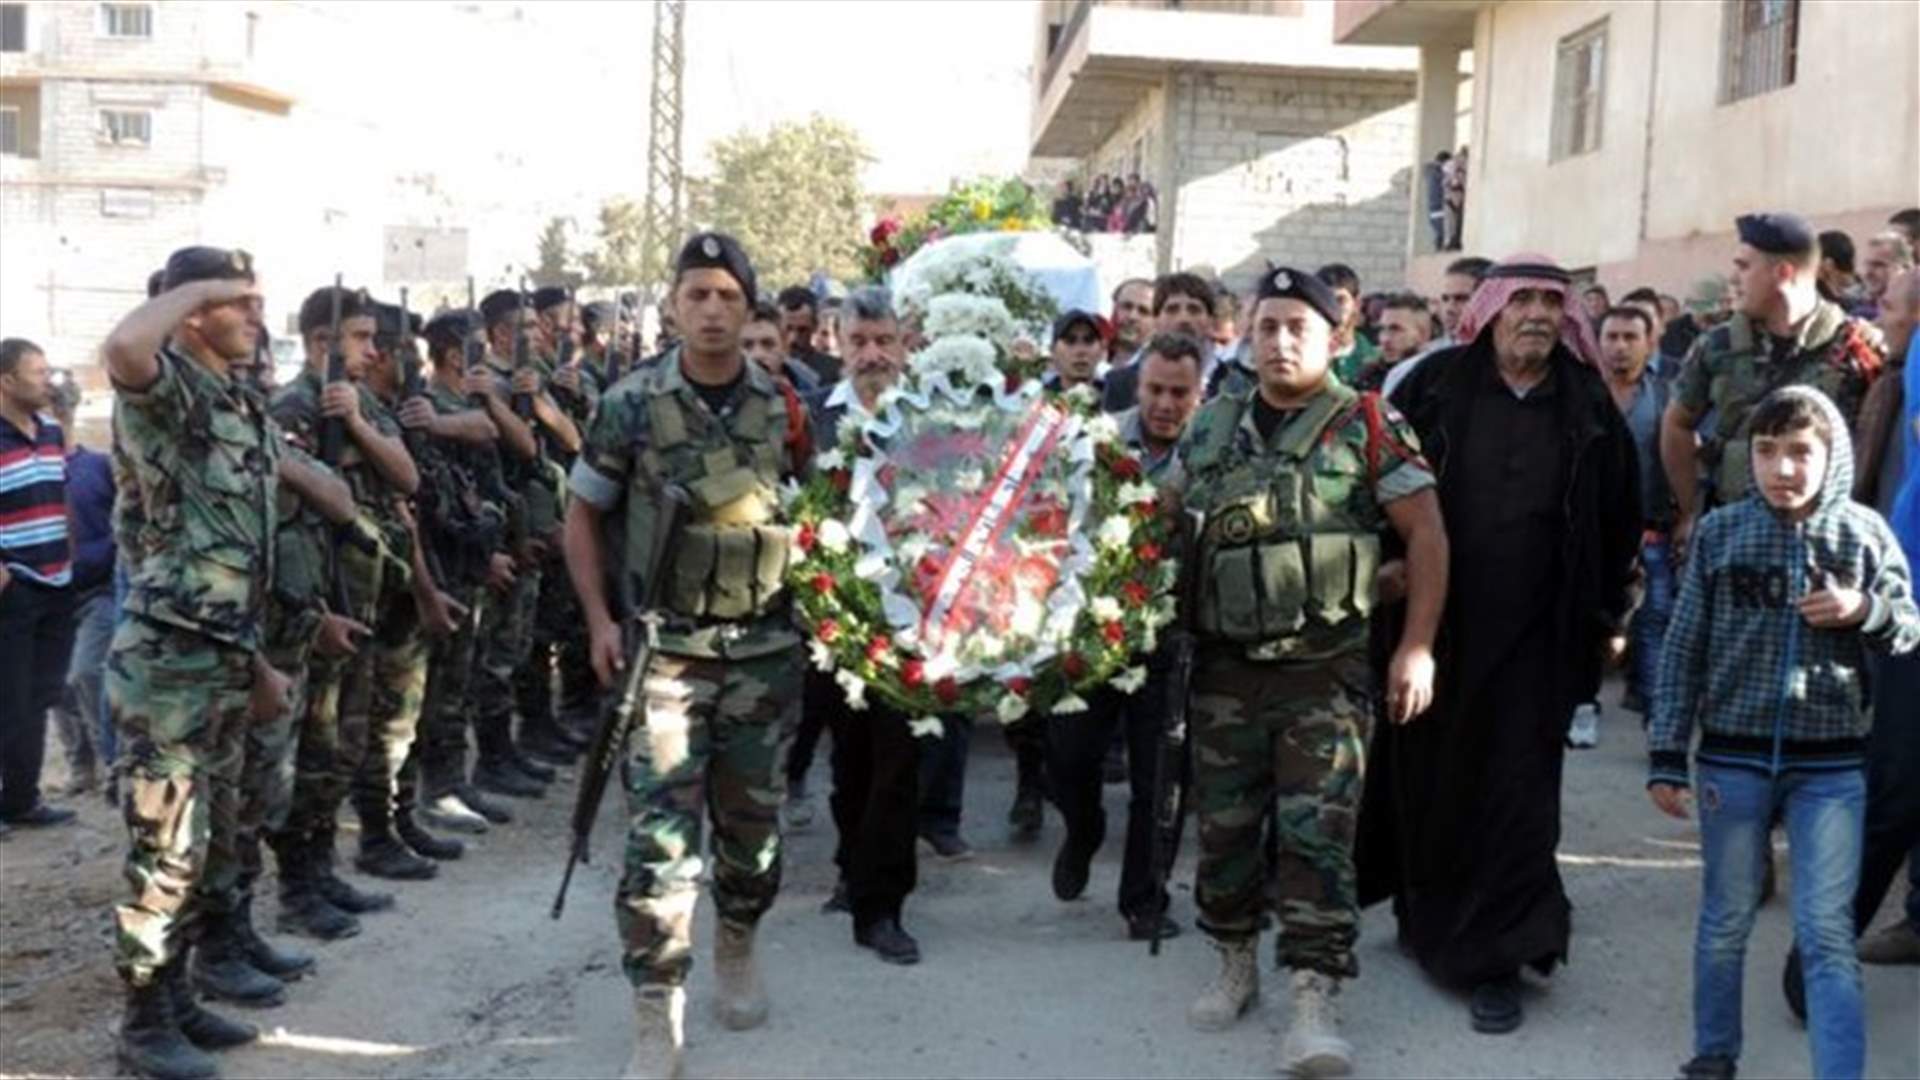 Arsal bids farewell to Army Sergeant Ezzeddine